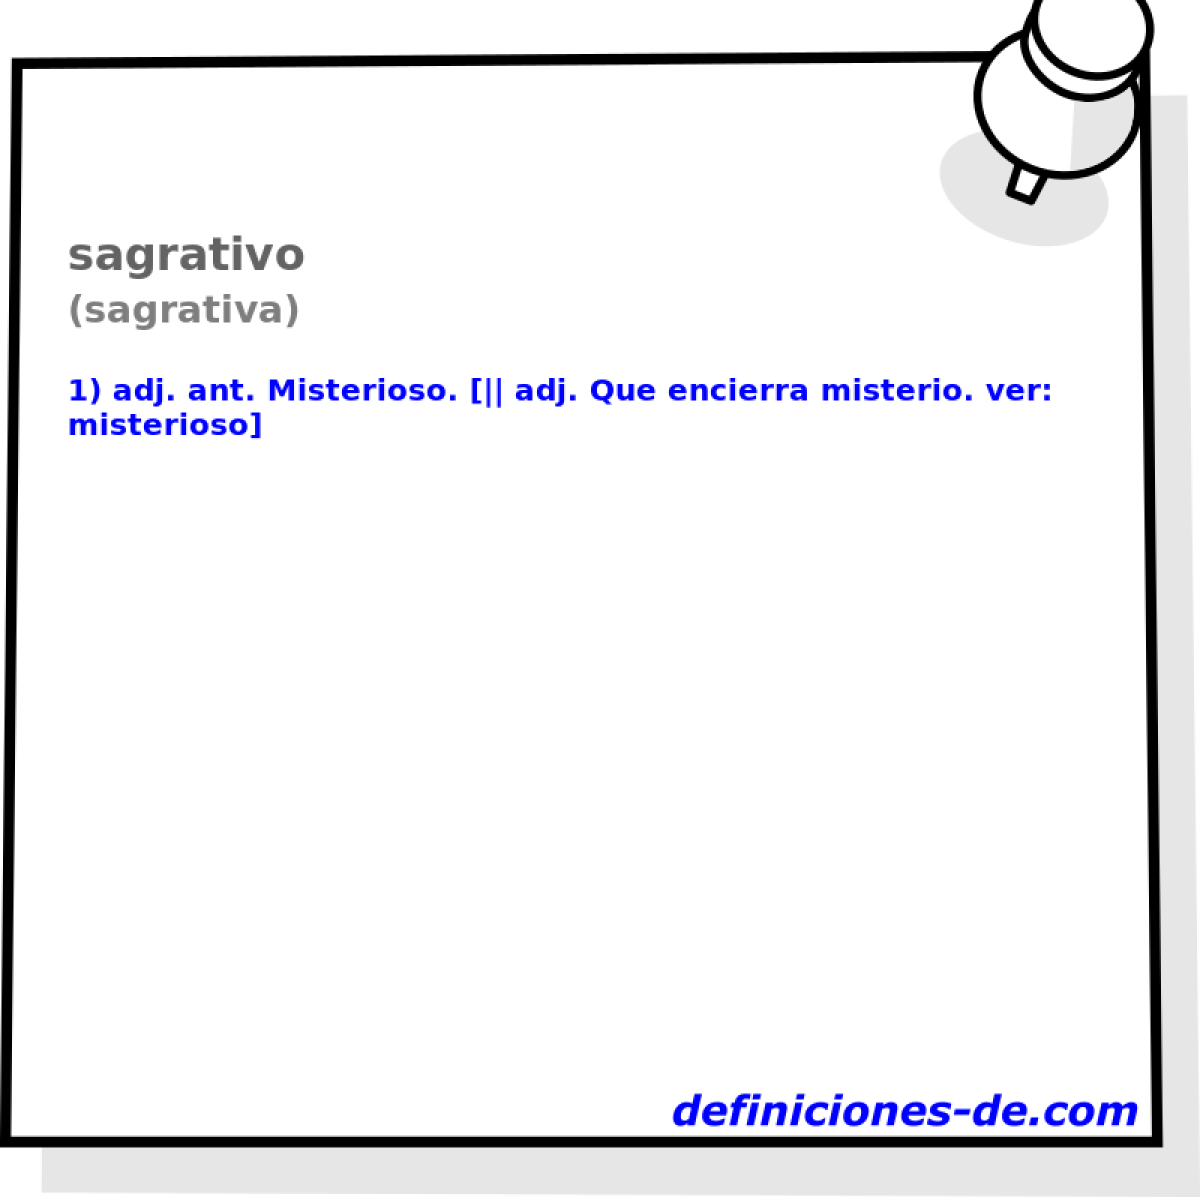 sagrativo (sagrativa)